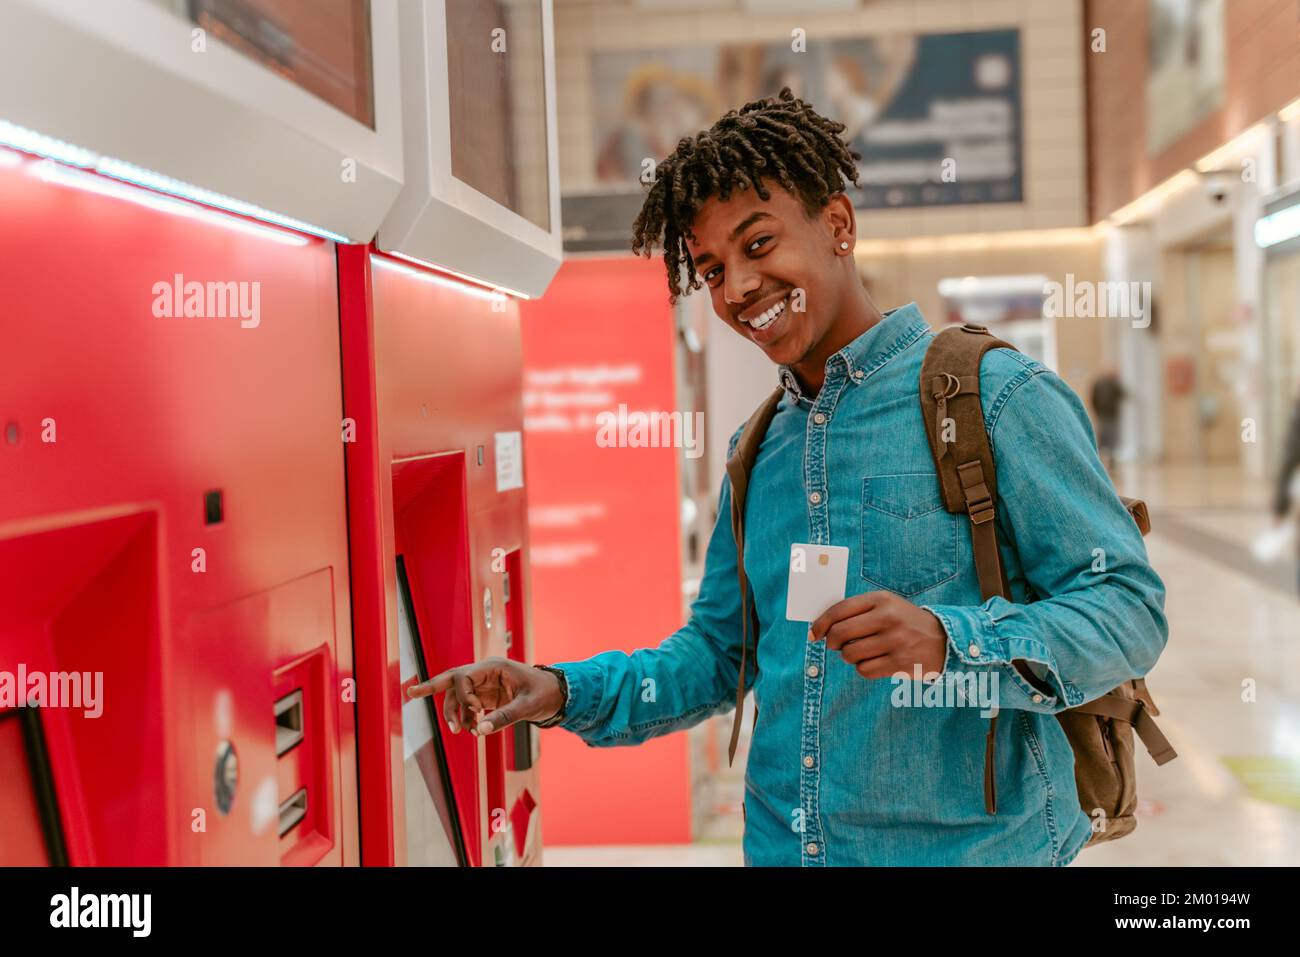 Guter Versuch. Ein afrikanischer Kerl, der vor der Kamera lächelt und zeigt, wie er ein Ticket gekauft hat, indem er das Selbstbedienungsterminal am Bahnhof berührt. Stockfoto